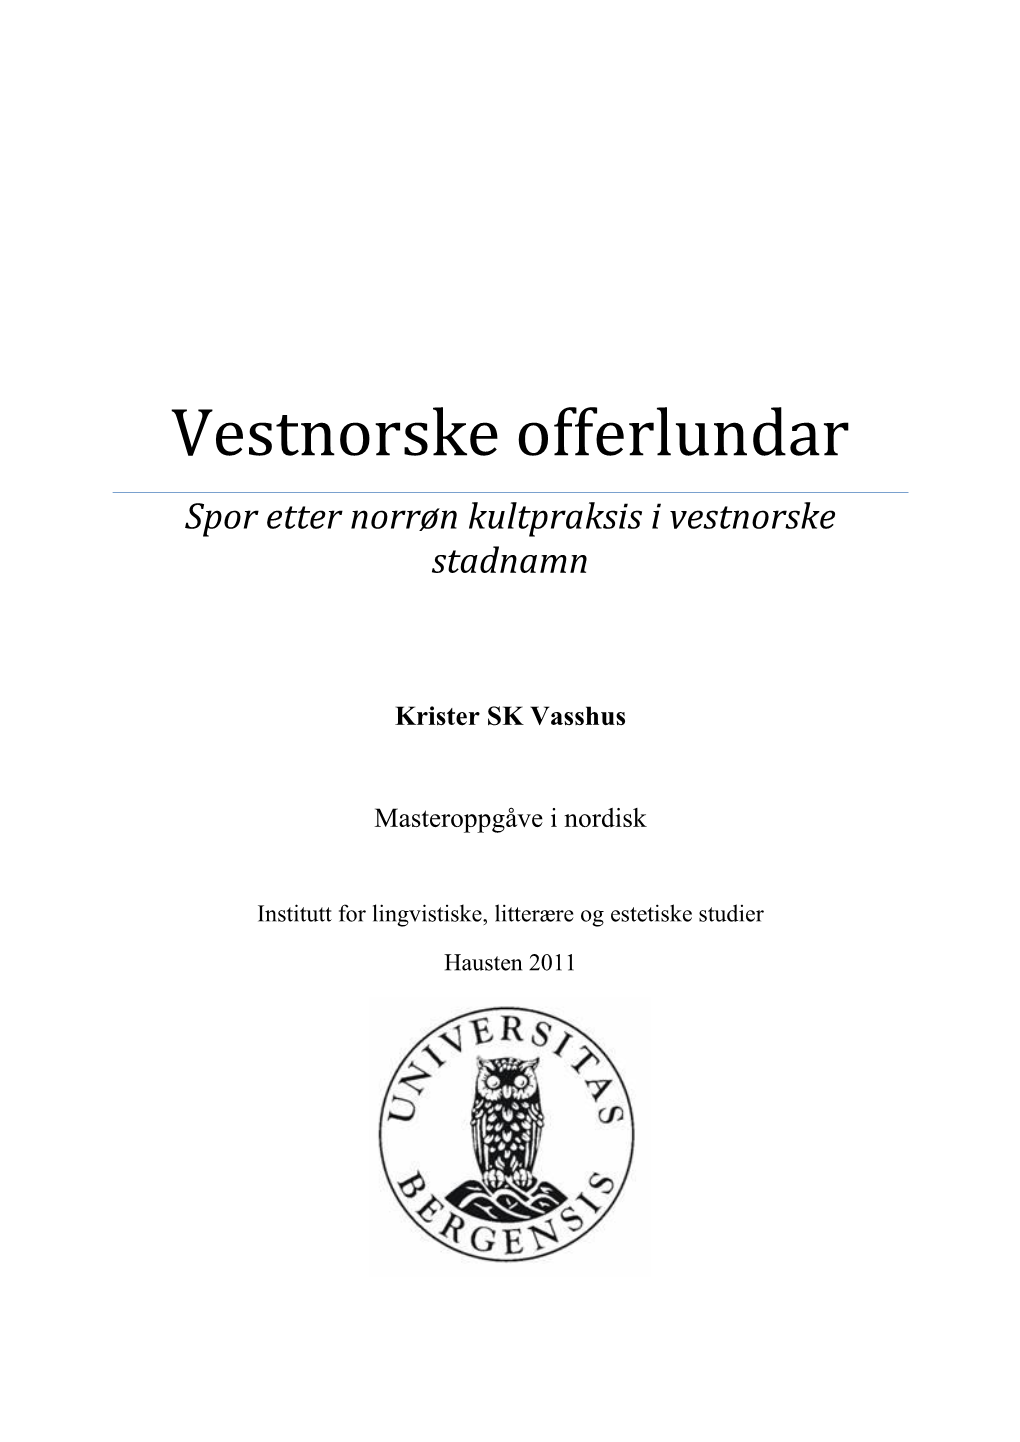 Vestnorske Offerlundar Spor Etter Norrøn Kultpraksis I Vestnorske Stadnamn